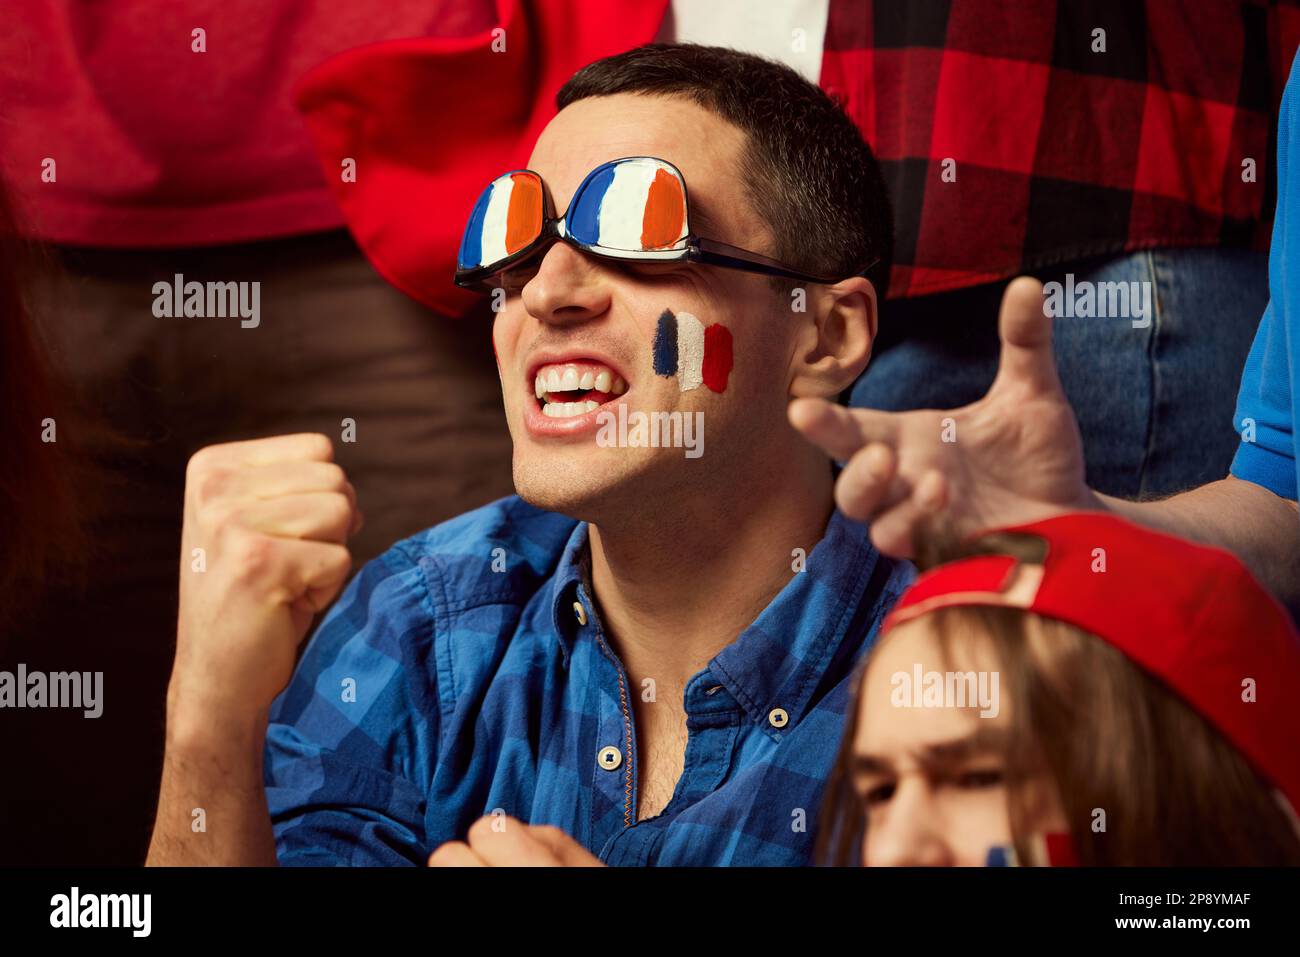 Fußball- und Fußballfans, die ihre französische Lieblingsmannschaft  emotional aufheitern. Mann mit Brille in den Farben der Landesflagge.  Fröhliche Emotionen, Siegerspiel Stockfotografie - Alamy